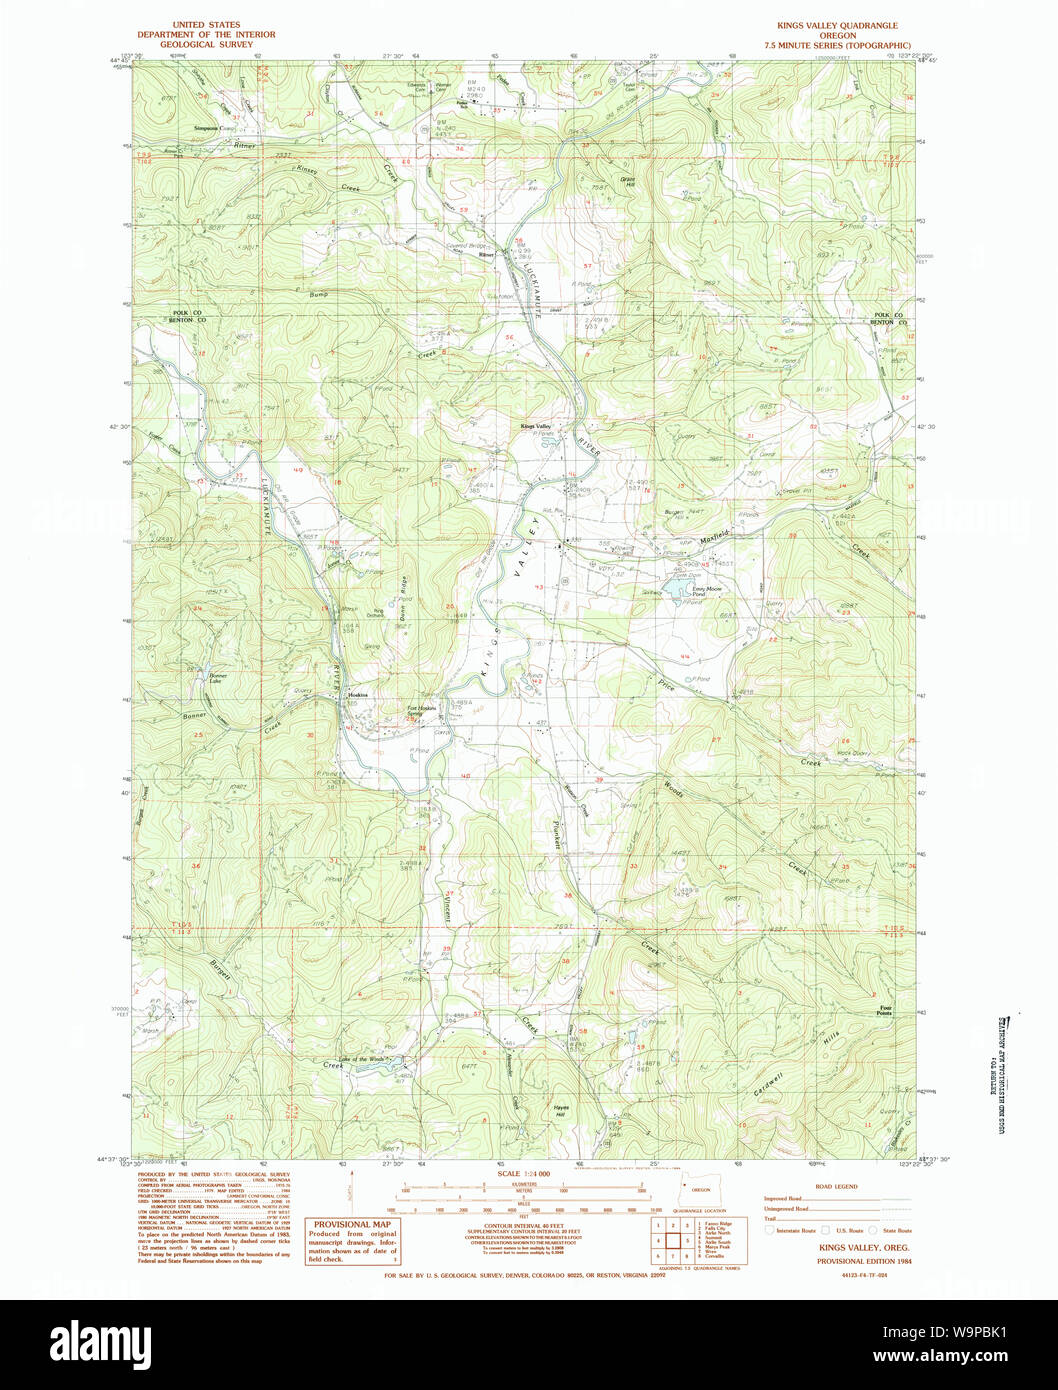 USGS Topo Karte Oregon Kings Valley 1984 24000 280408 Restaurierung Stockfoto